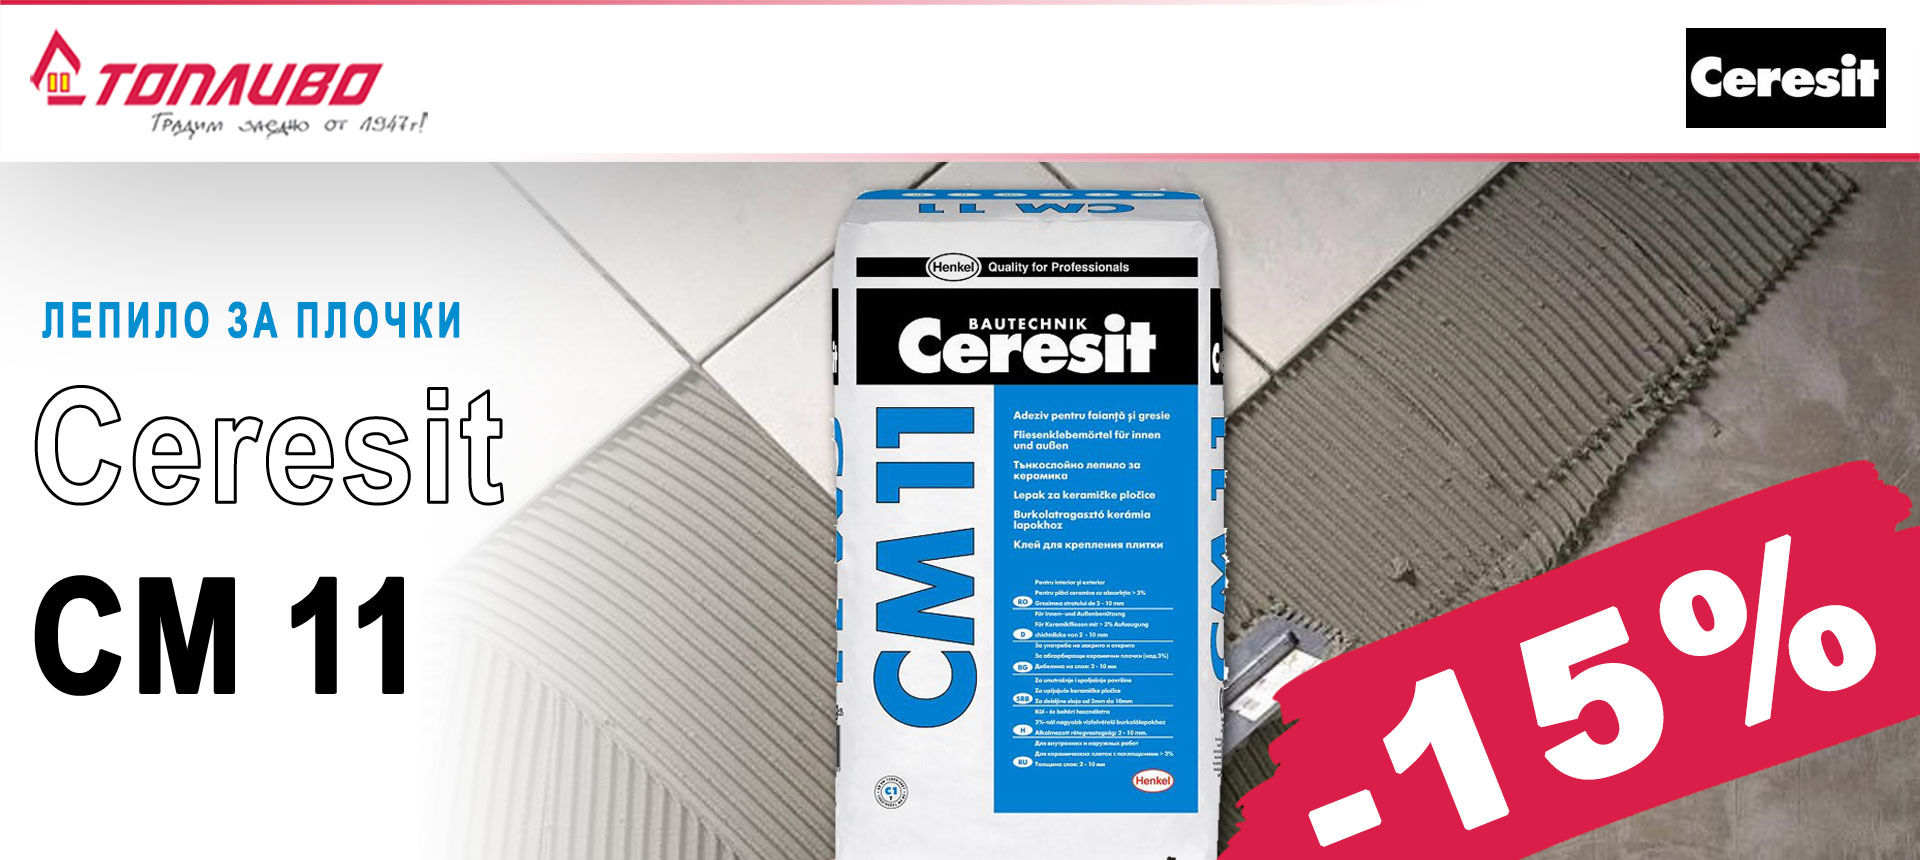 Лепило за плочки CERESIT CM 11 с 15 % отстъпка